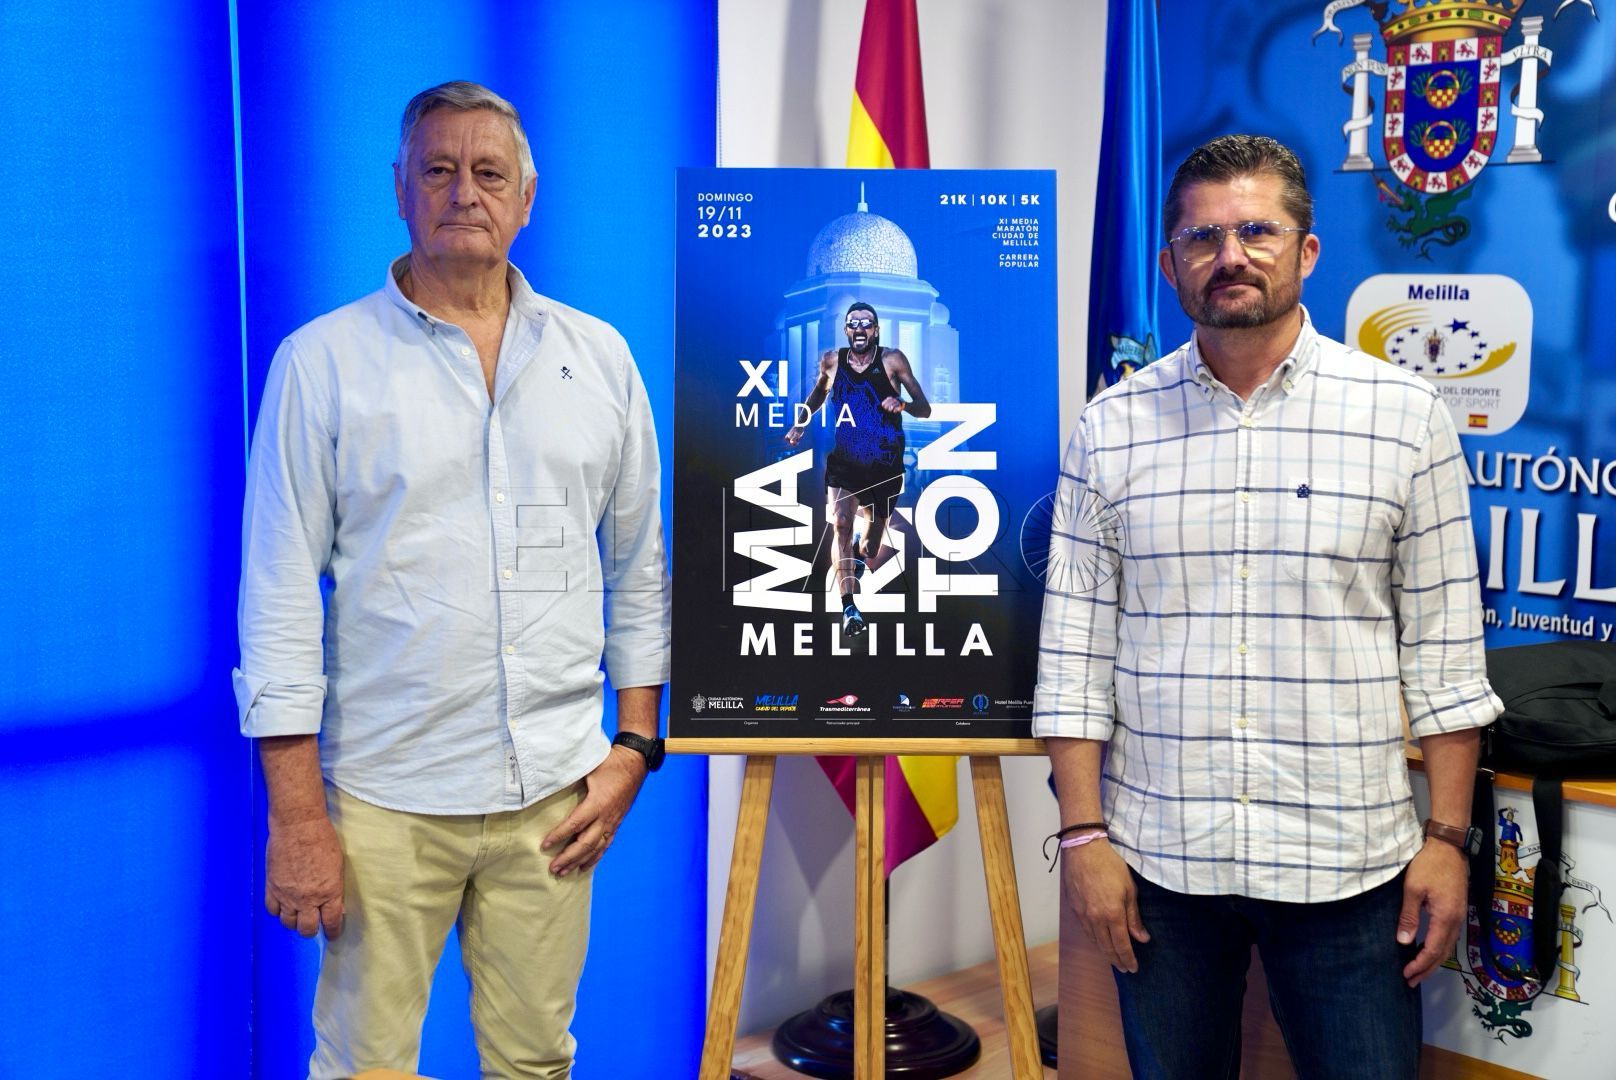 La XI Media Maratón de Melilla se disputa el 19 de noviembre